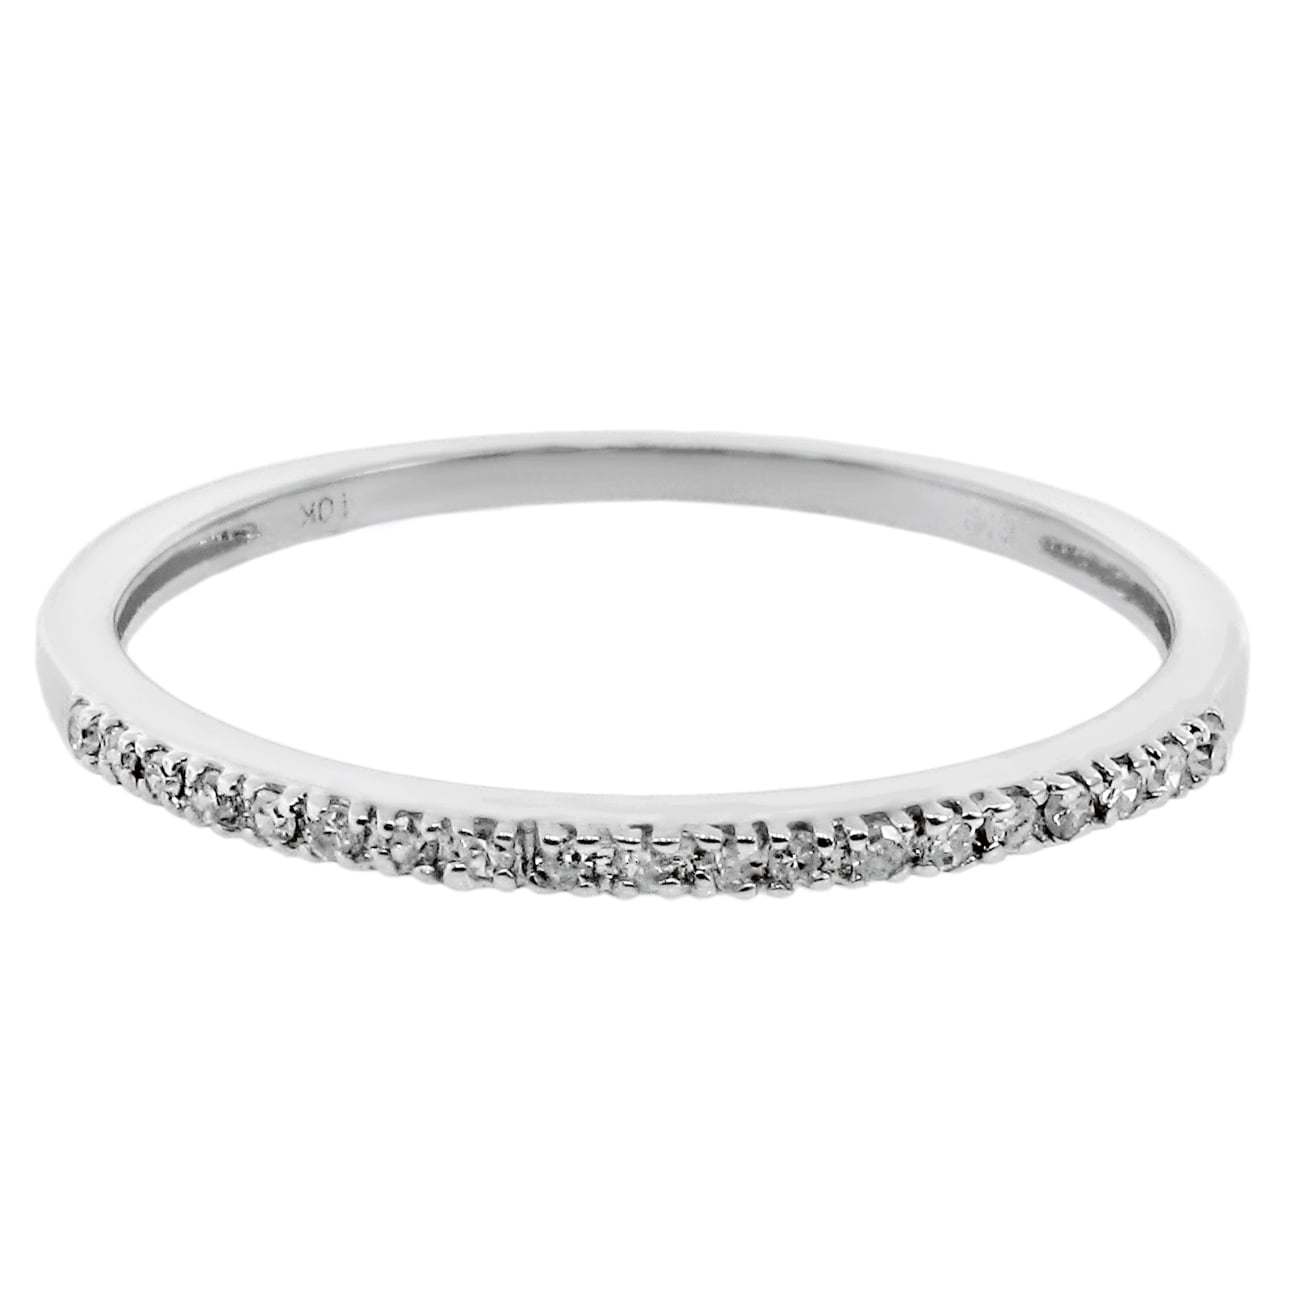 06 cttw White Diamond 14K White Gold Wedding Band Ring Size 8